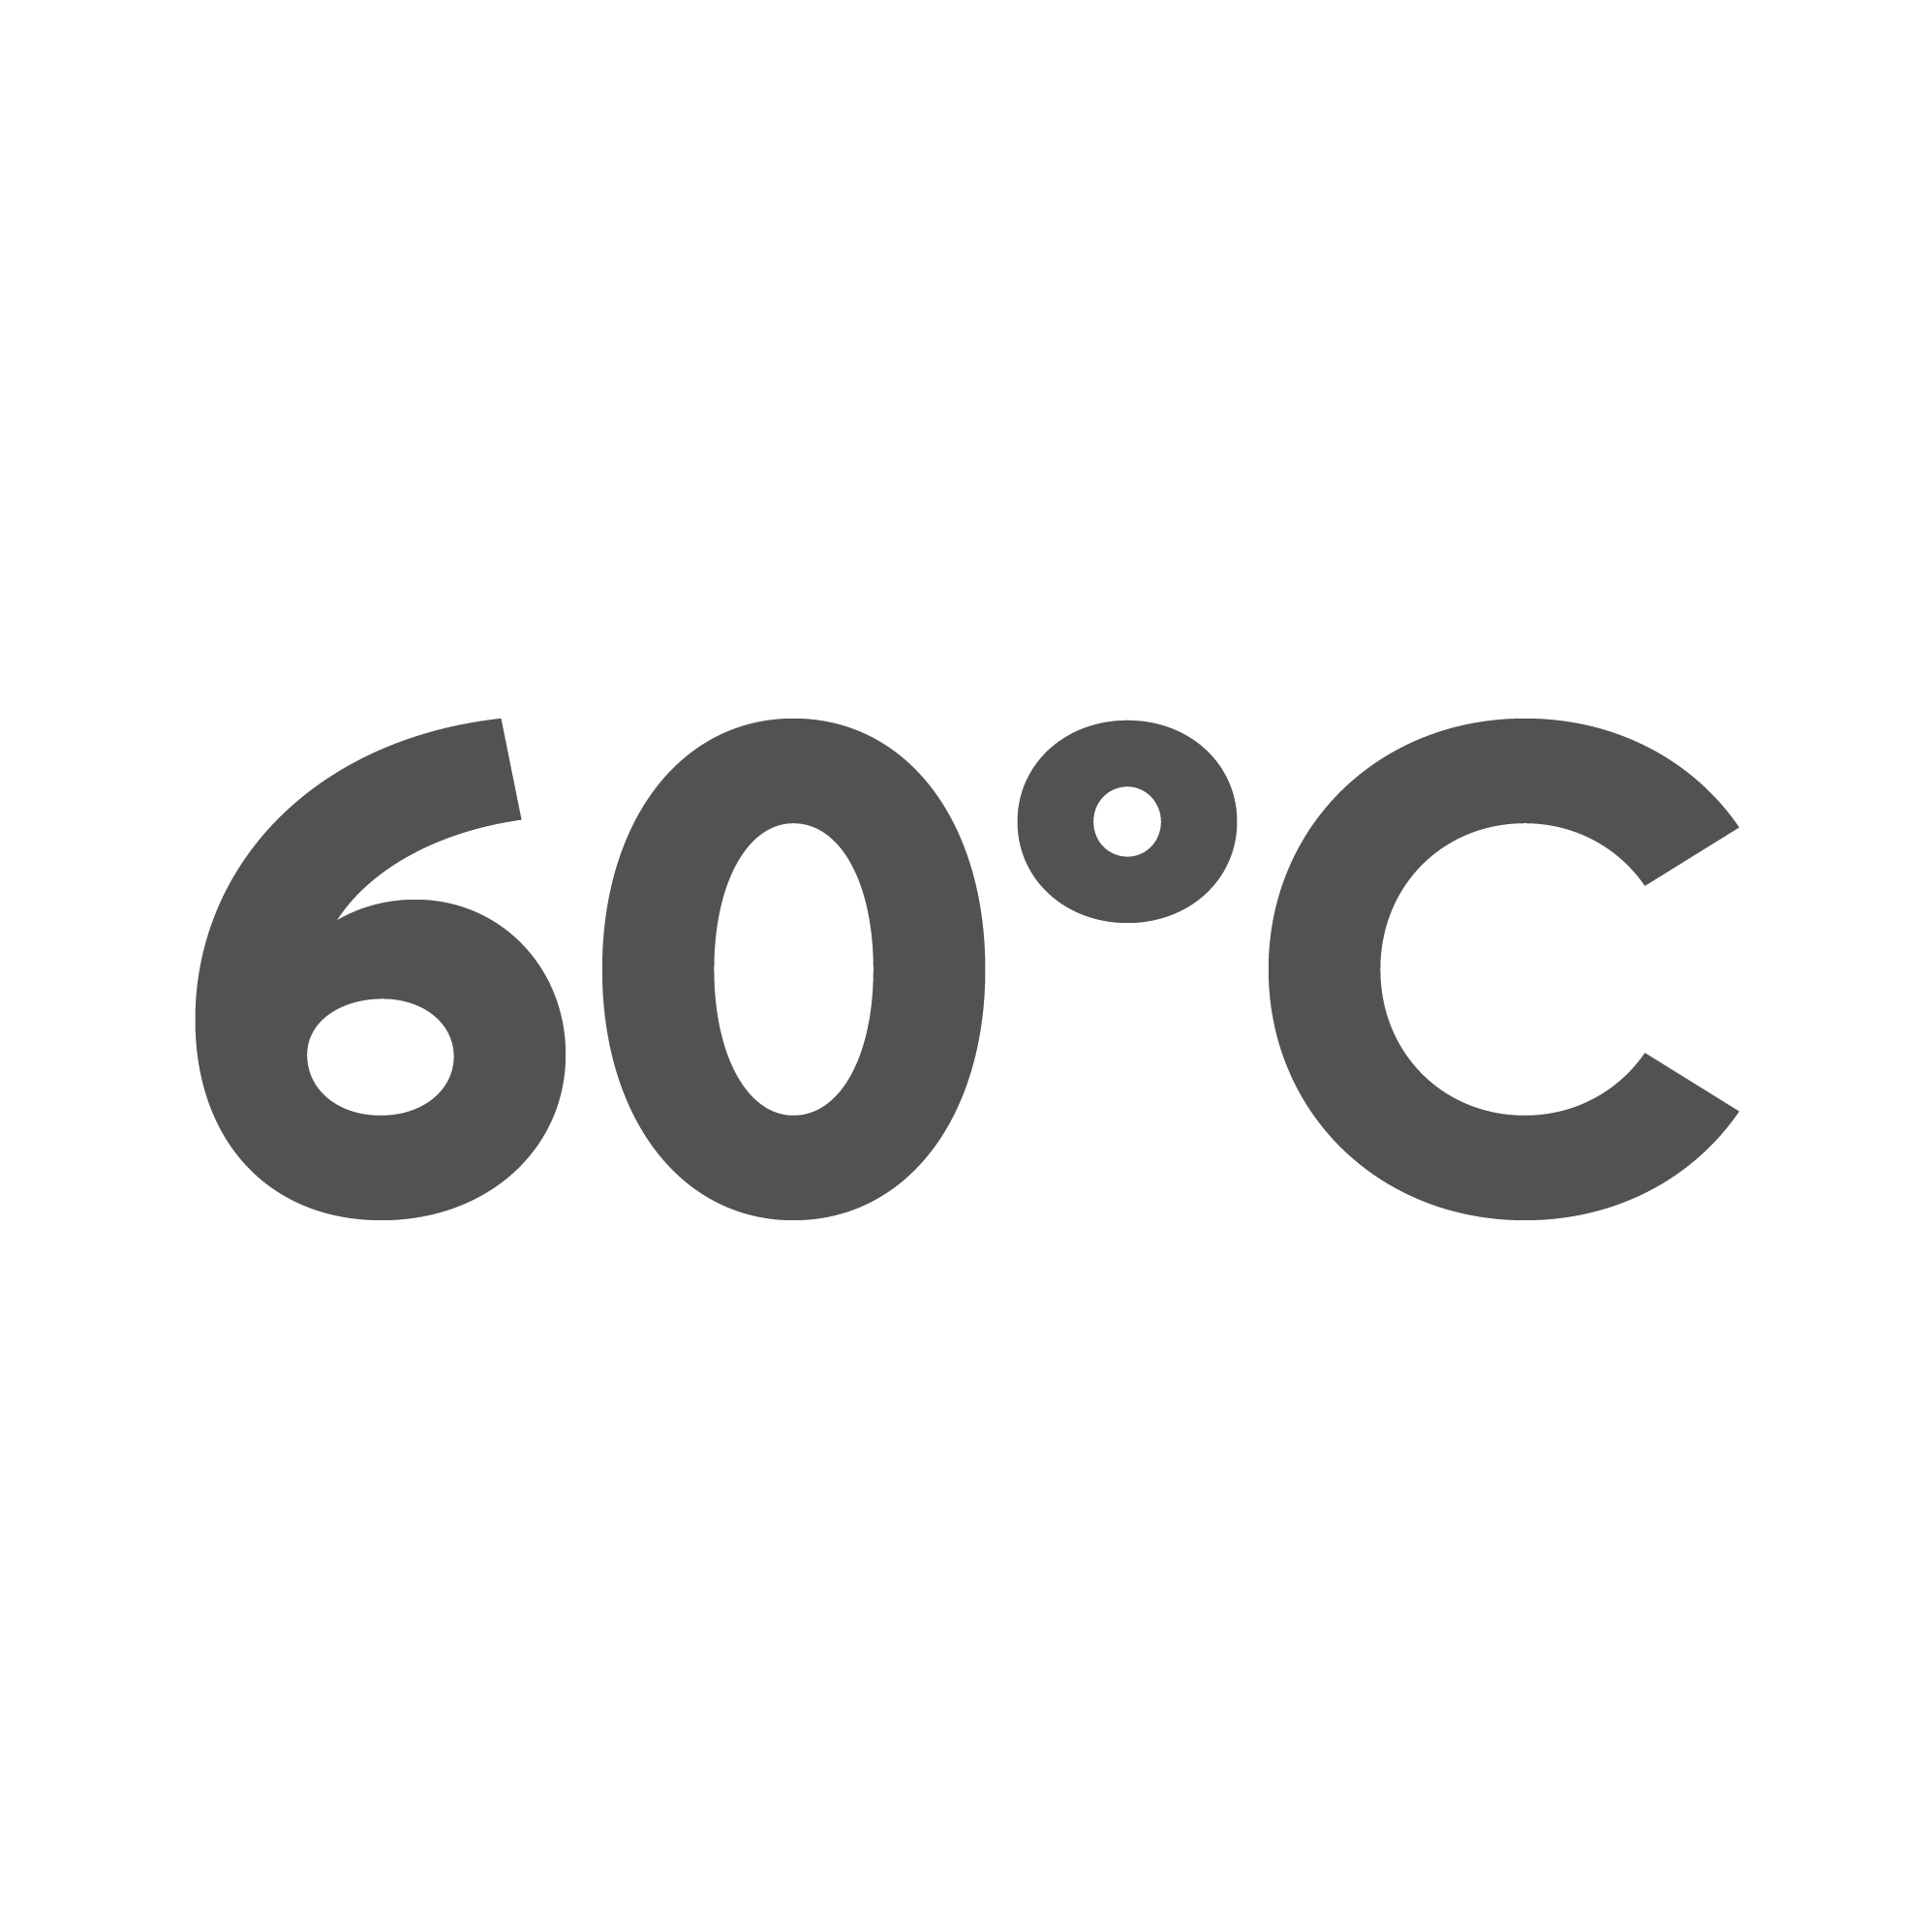 60ºC